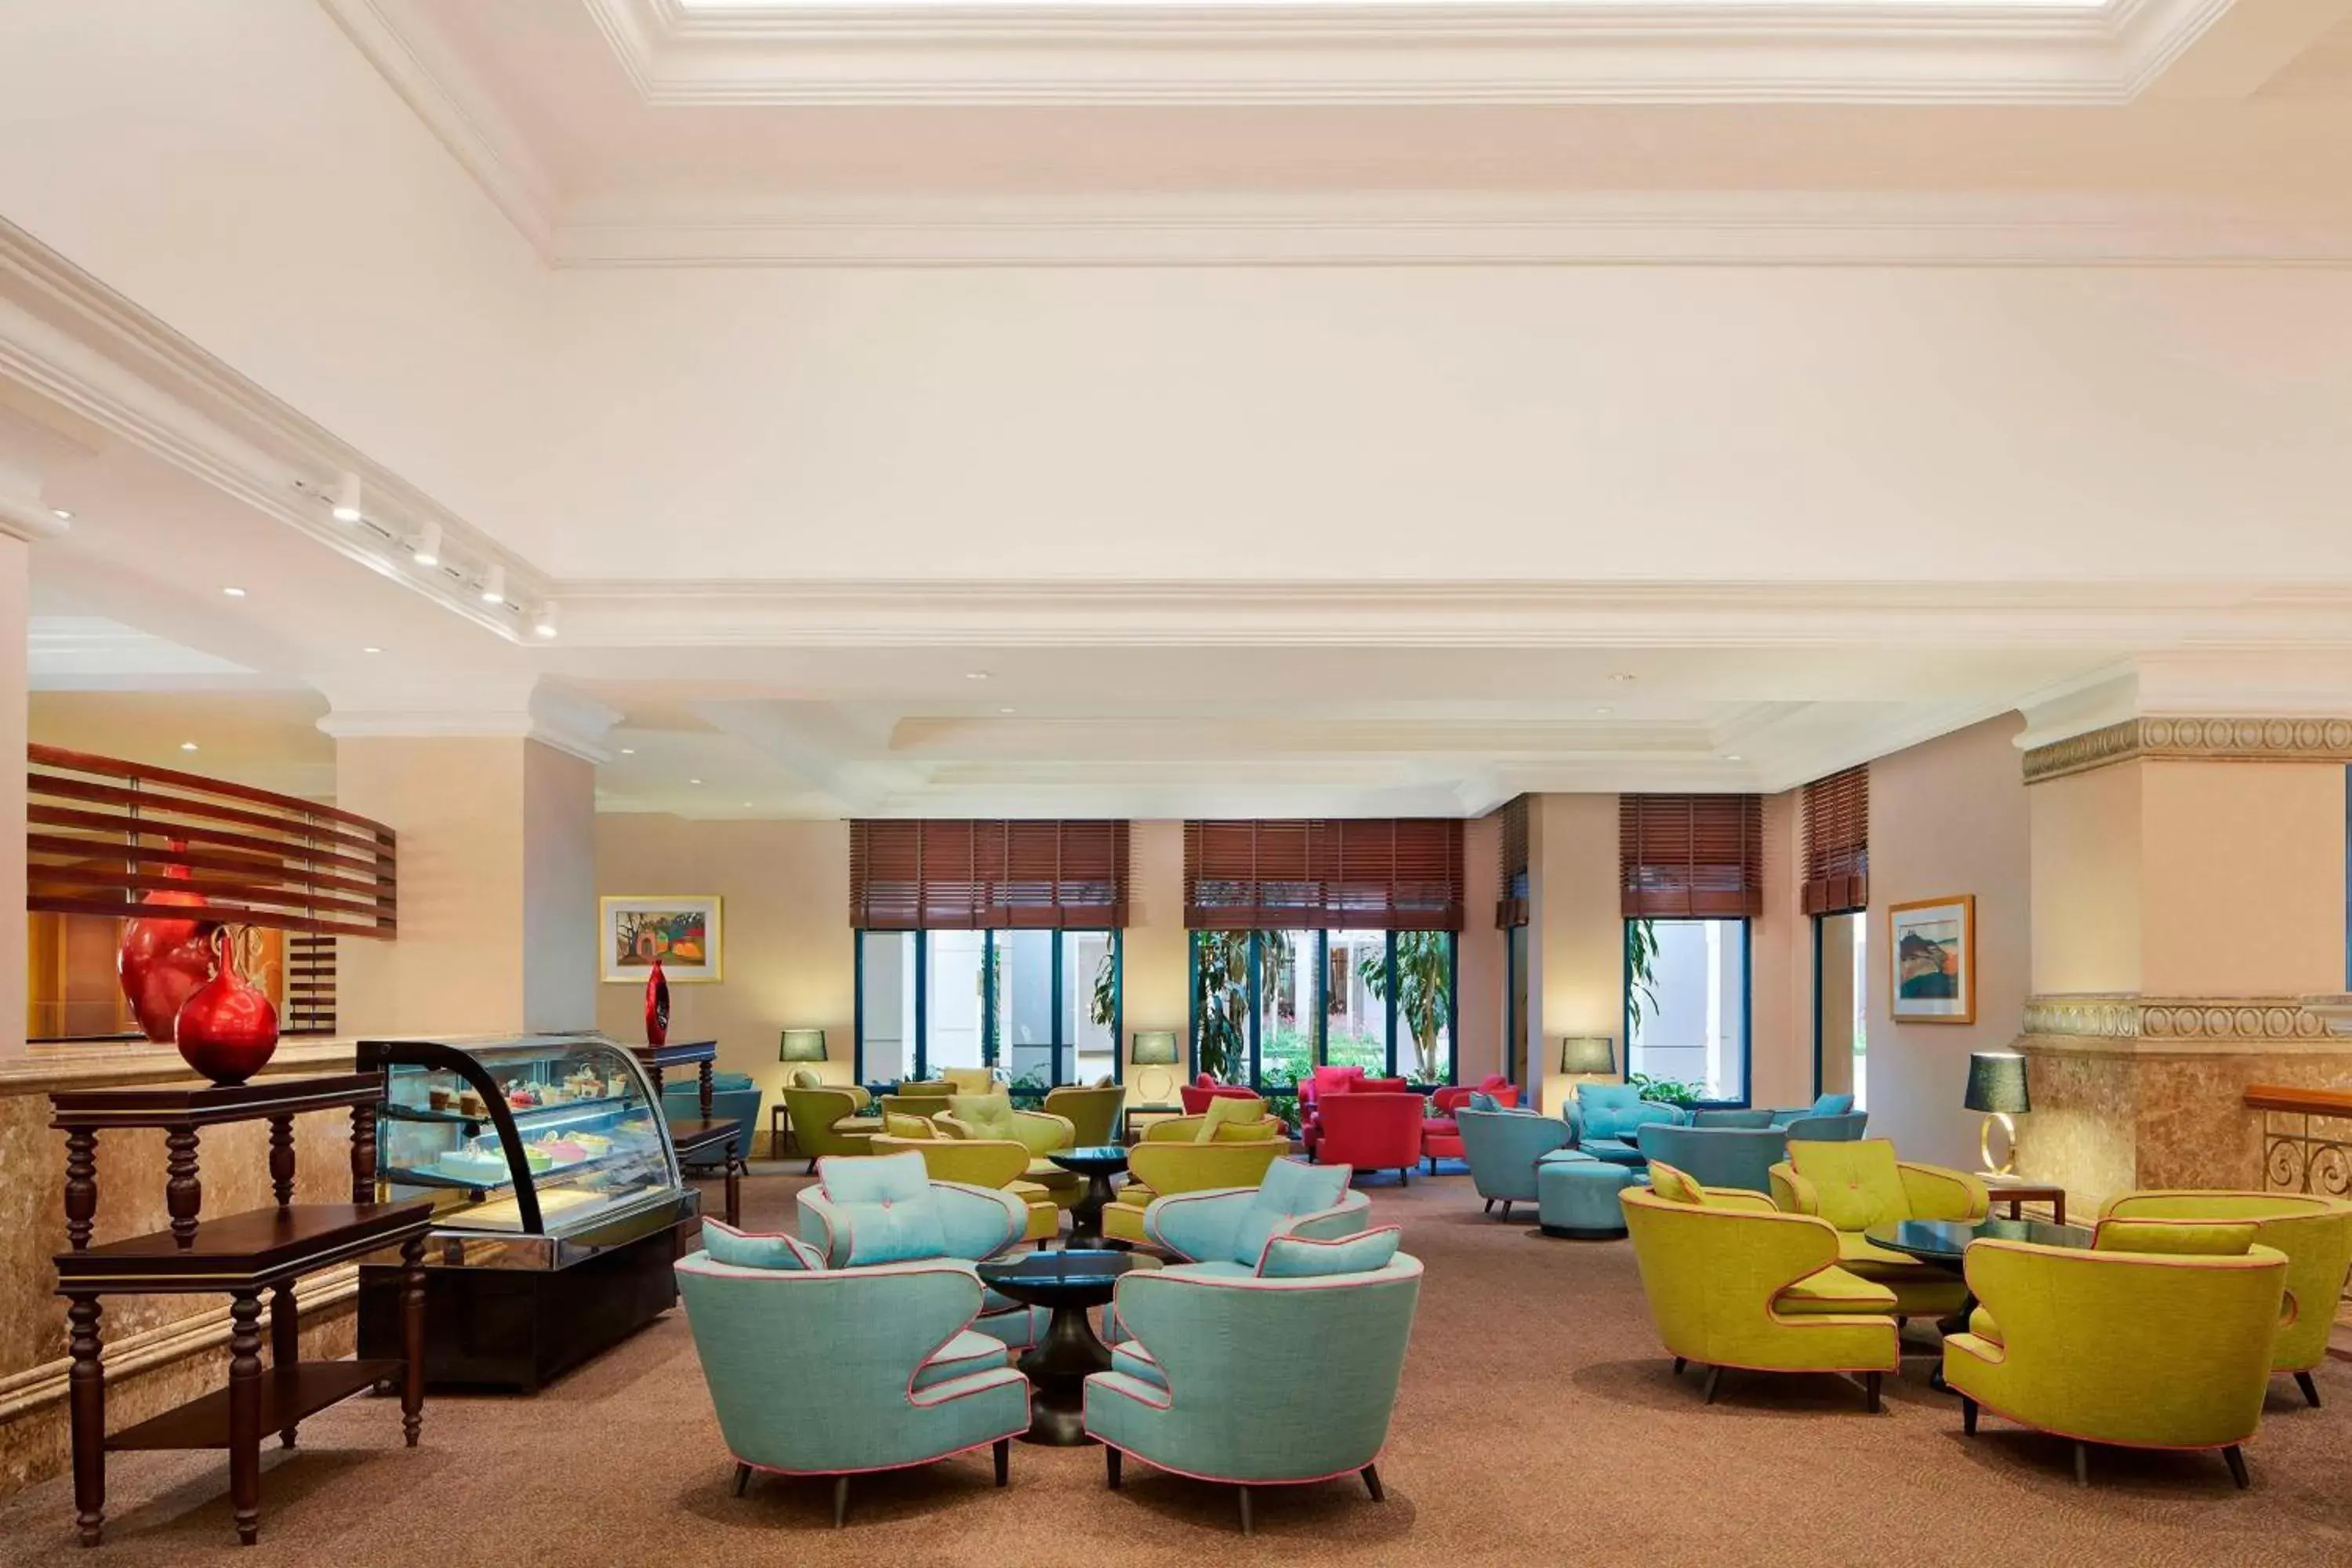 Lobby or reception in Sheraton Hanoi Hotel